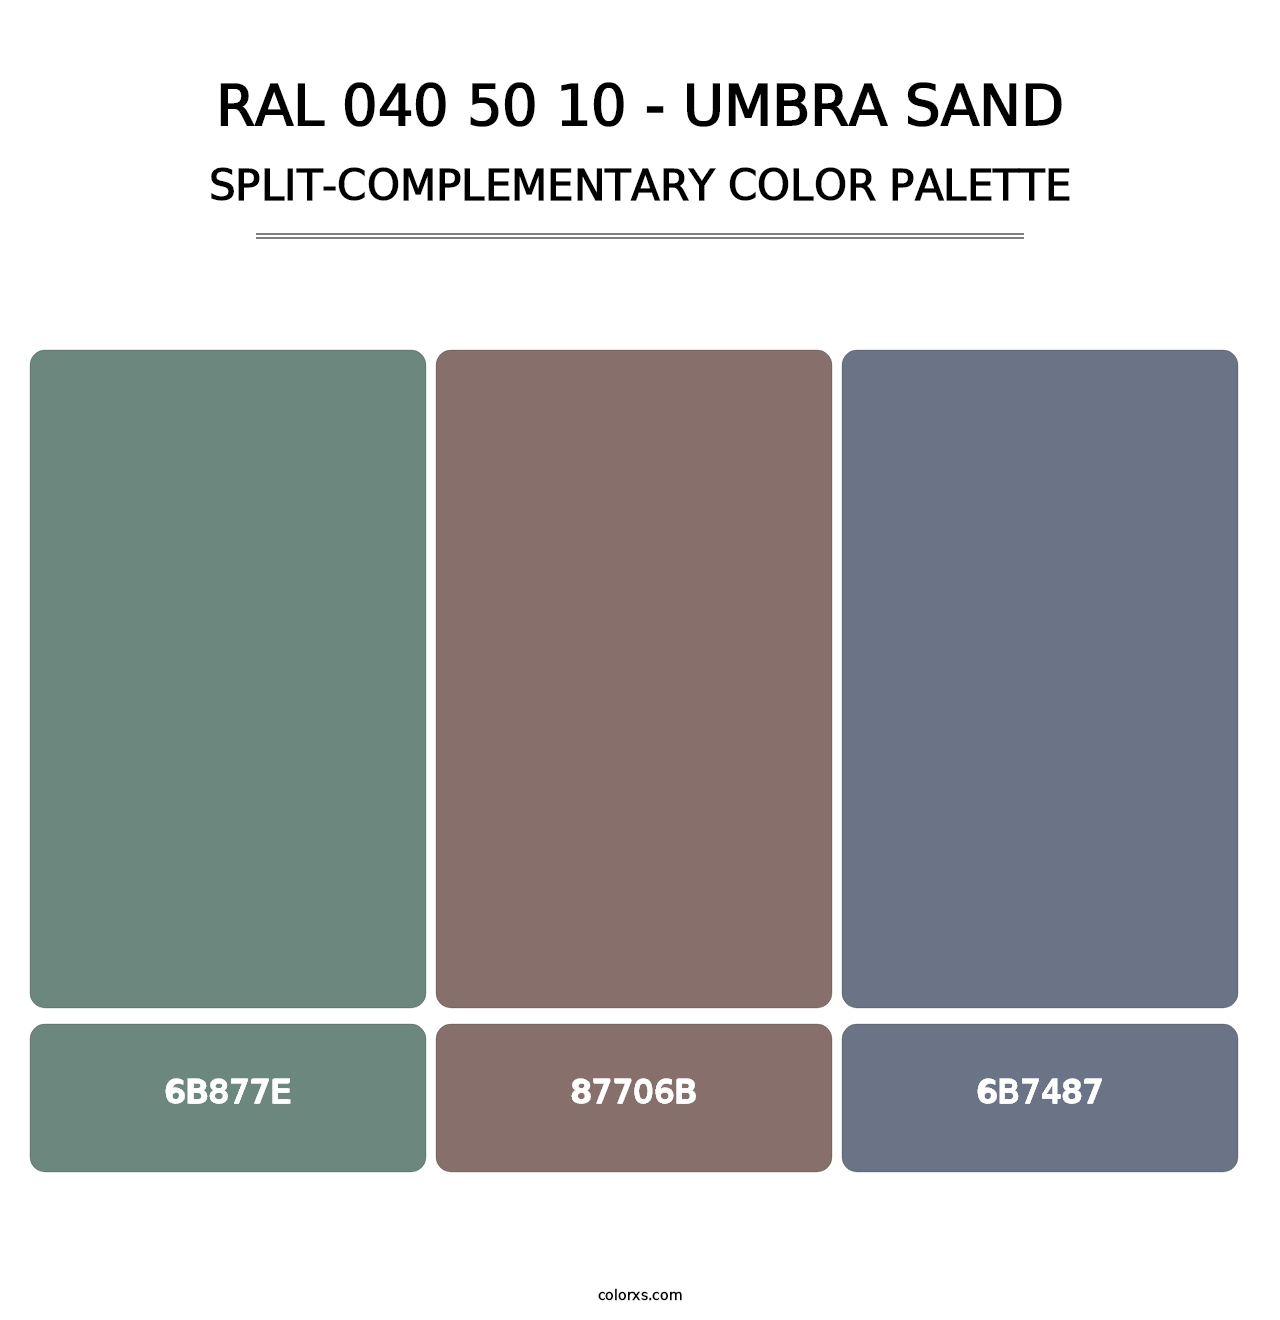 RAL 040 50 10 - Umbra Sand - Split-Complementary Color Palette